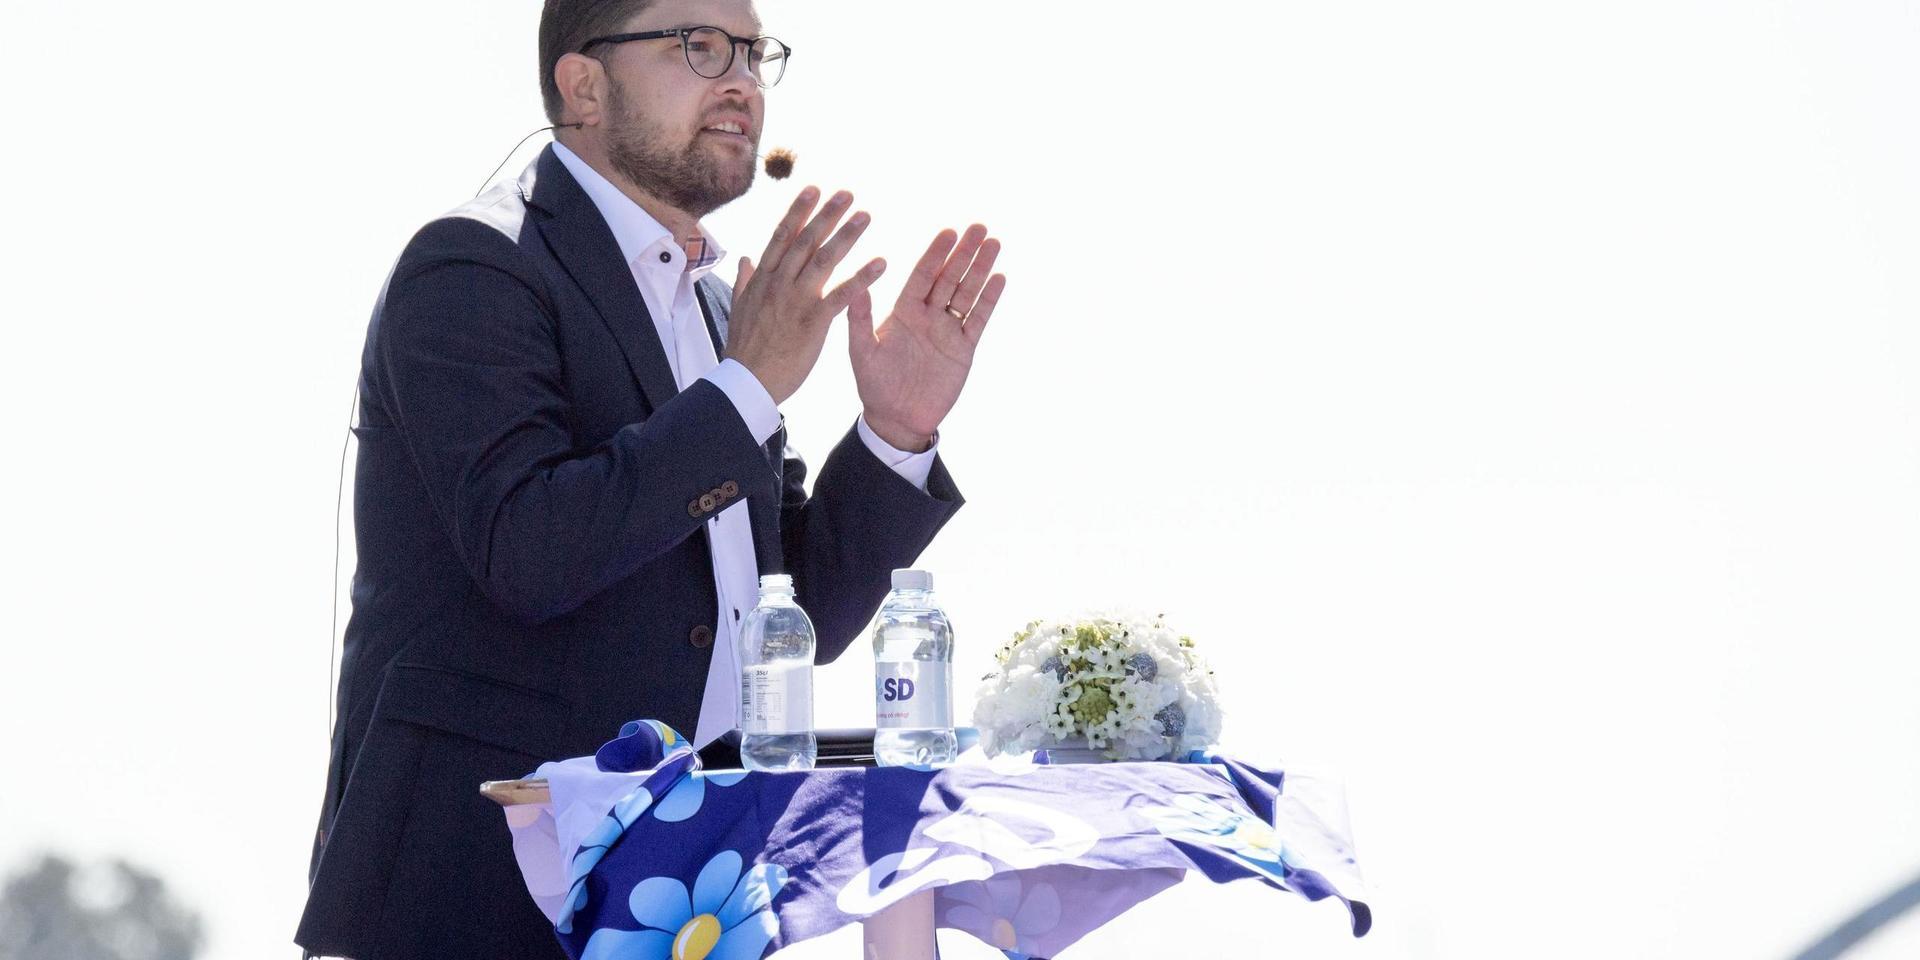 Vikten av att hålla fysiskt avstånd var ett tema när Sverigedemokraternas partiledare Jimmie Åkesson sommartalade i Sölvesborg. Nu avslöjas han på fest tätt intill andra festdeltagare. Arkivbild.